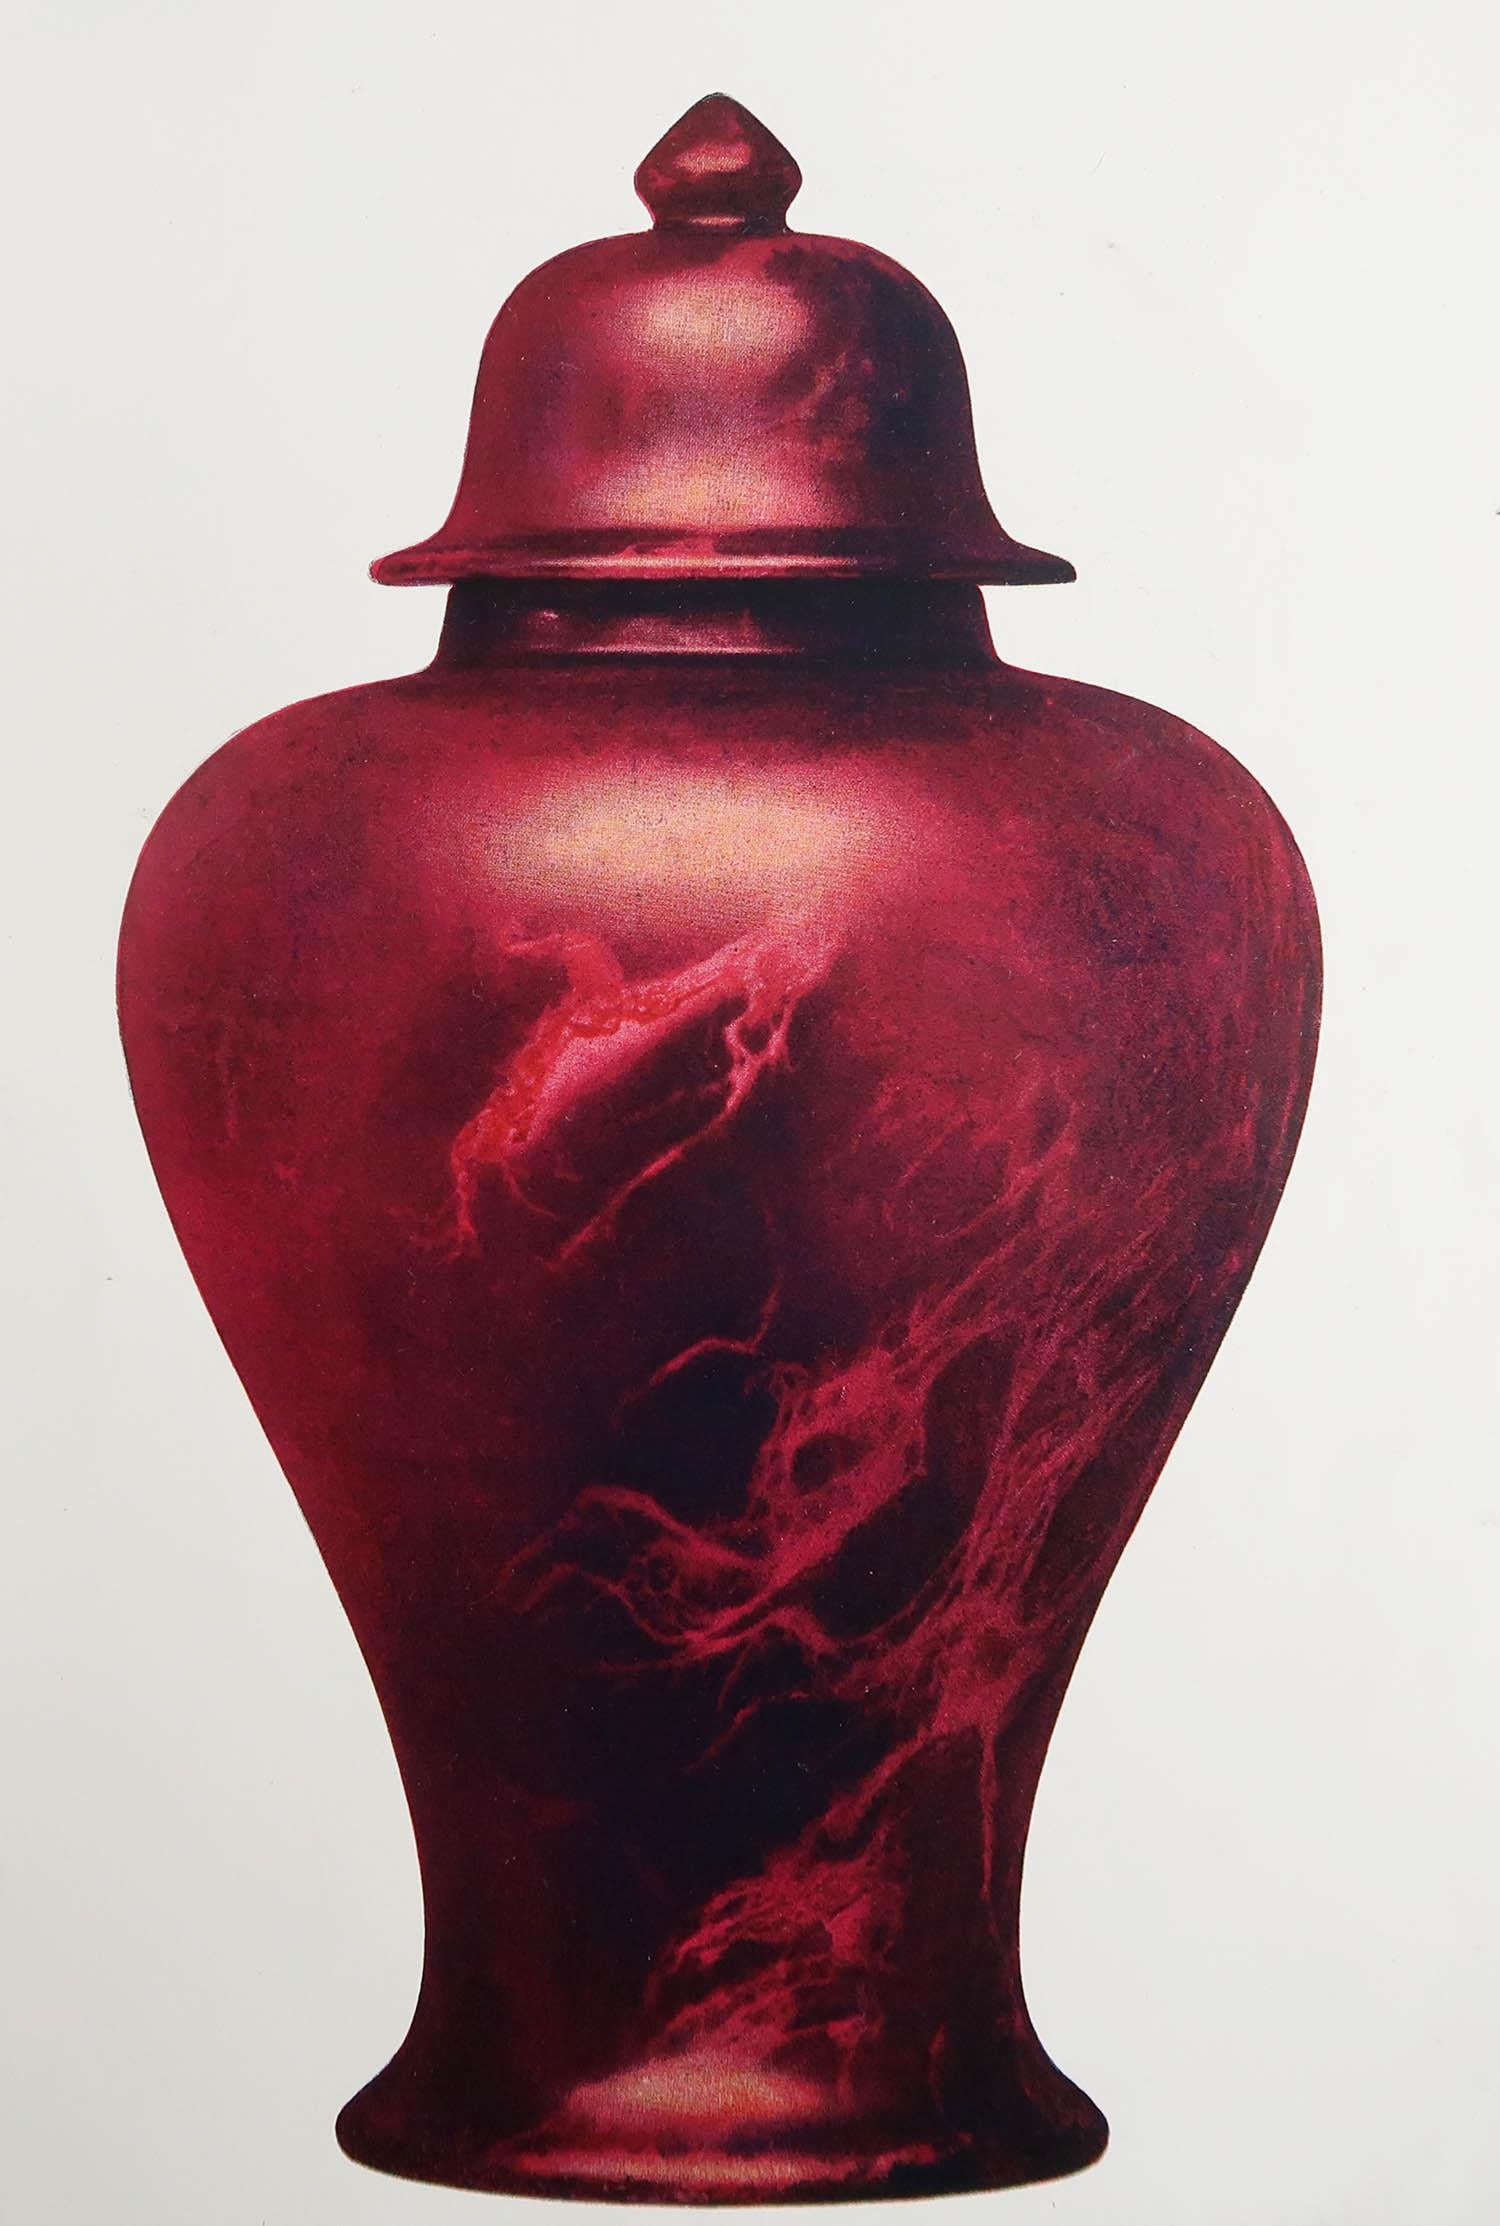 Magnifique impression d'un vase flambeur anglais.

Belle couleur.

Chromolithographie 

Publié par Connoisseur vers 1900

Non encadré.

